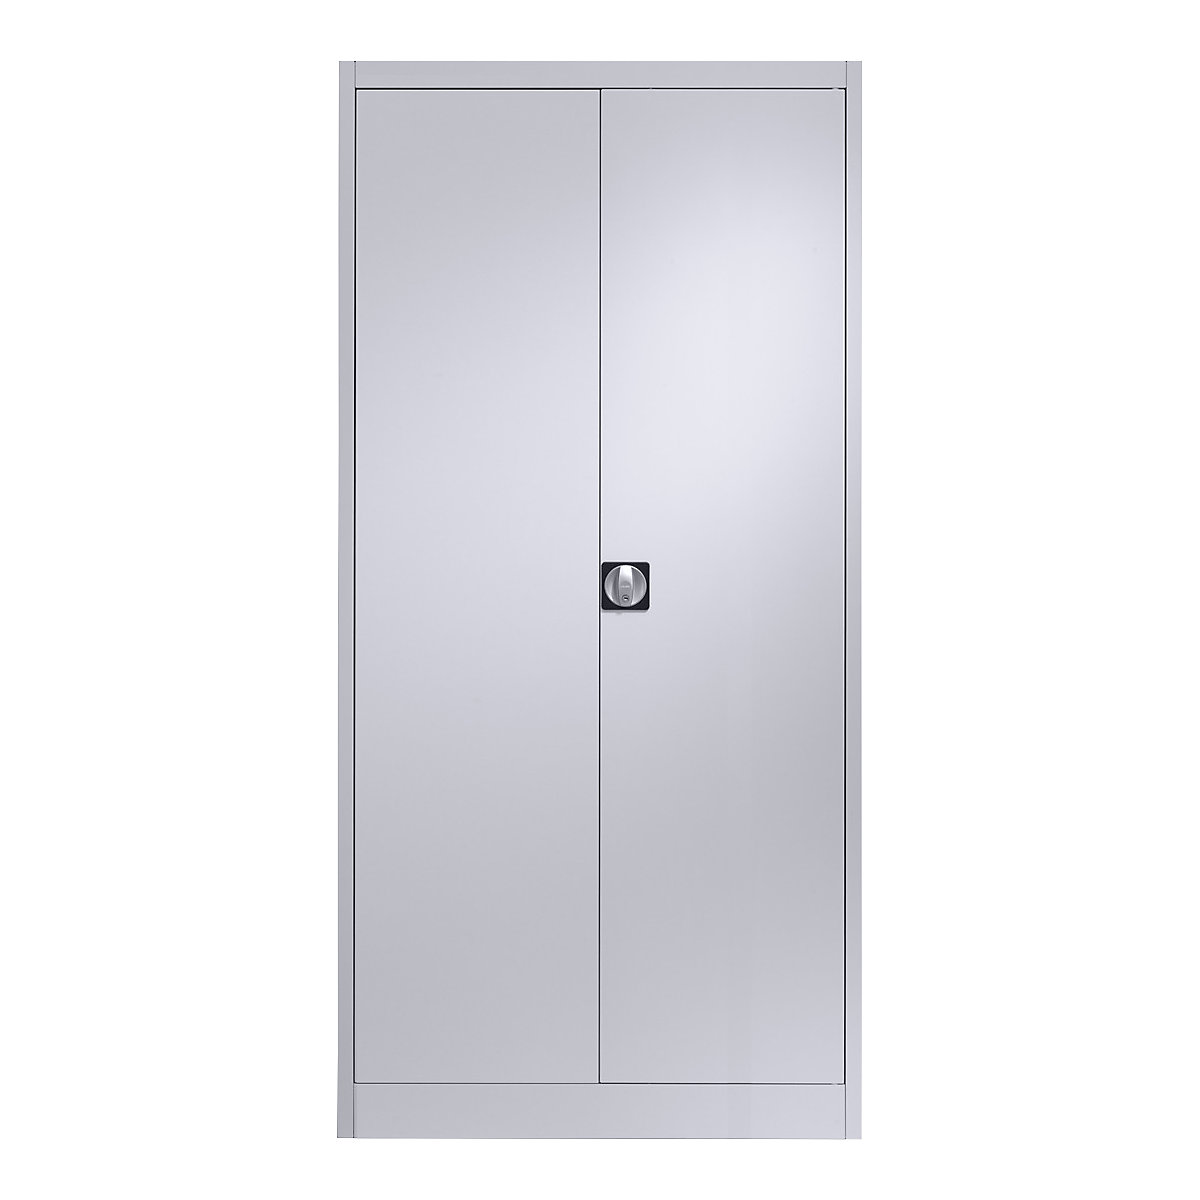 Čelični ormar s krilnim vratima – mauser, 4 police, D 500 mm, u aluminij bijeloj boji-5